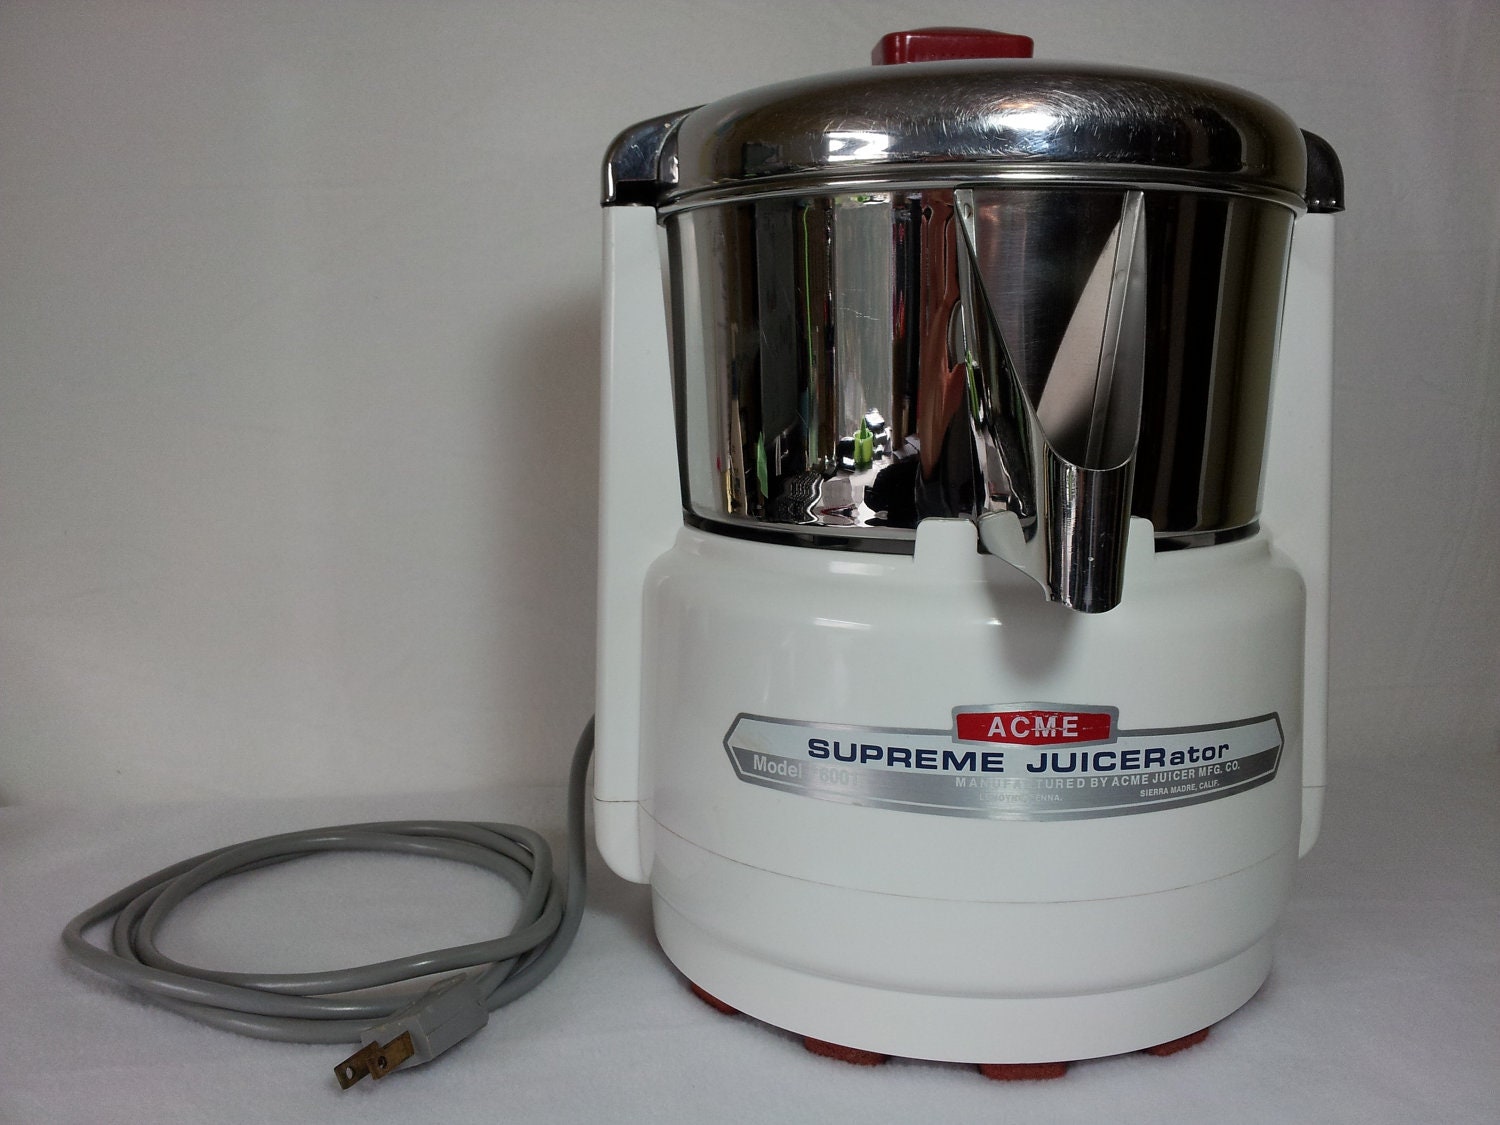 ACME Supreme Juicerator Model 6001 - Juicer